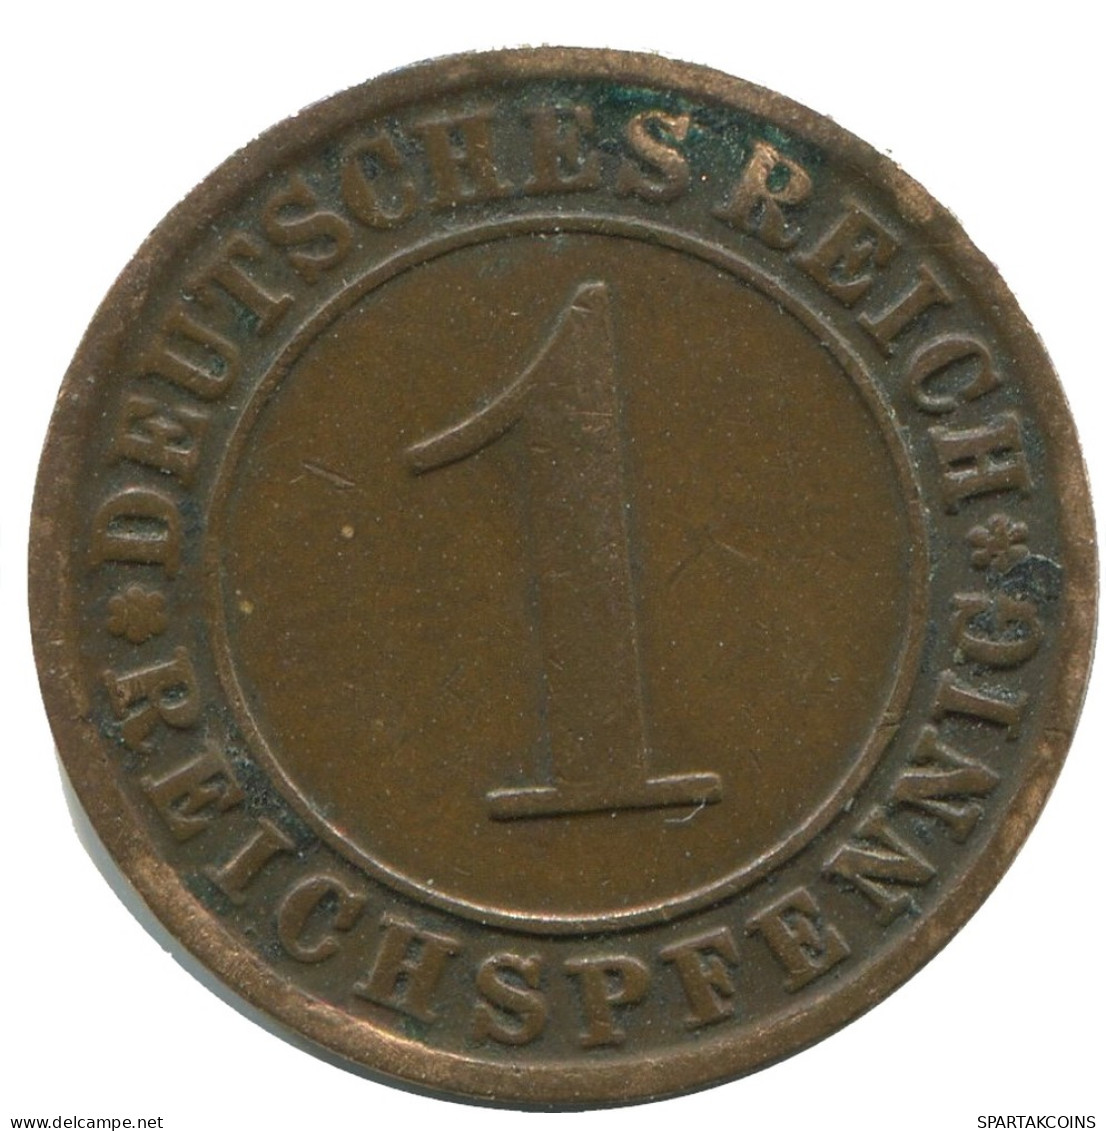 1 REICHSPFENNIG 1924 J GERMANY Coin #AD460.9.U - 1 Renten- & 1 Reichspfennig